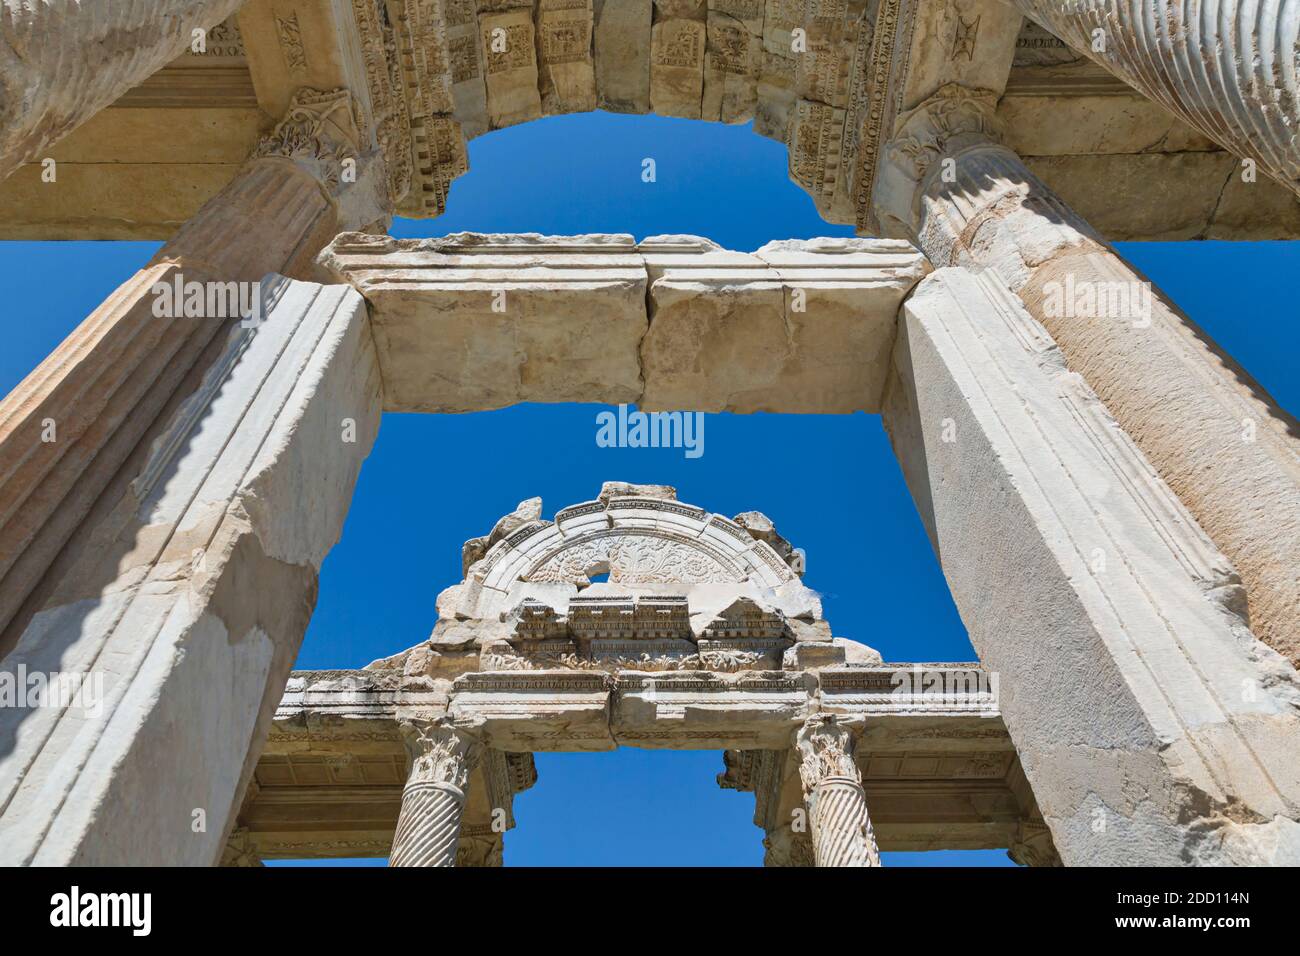 Ruines d'Aphrodisias, province d'Aydin, Turquie. Détail de la porte du 2ème siècle connue sous le nom de Tetrapylon. Aphrodisias, qui est un patrimoine mondial de l'UNESCO S Banque D'Images